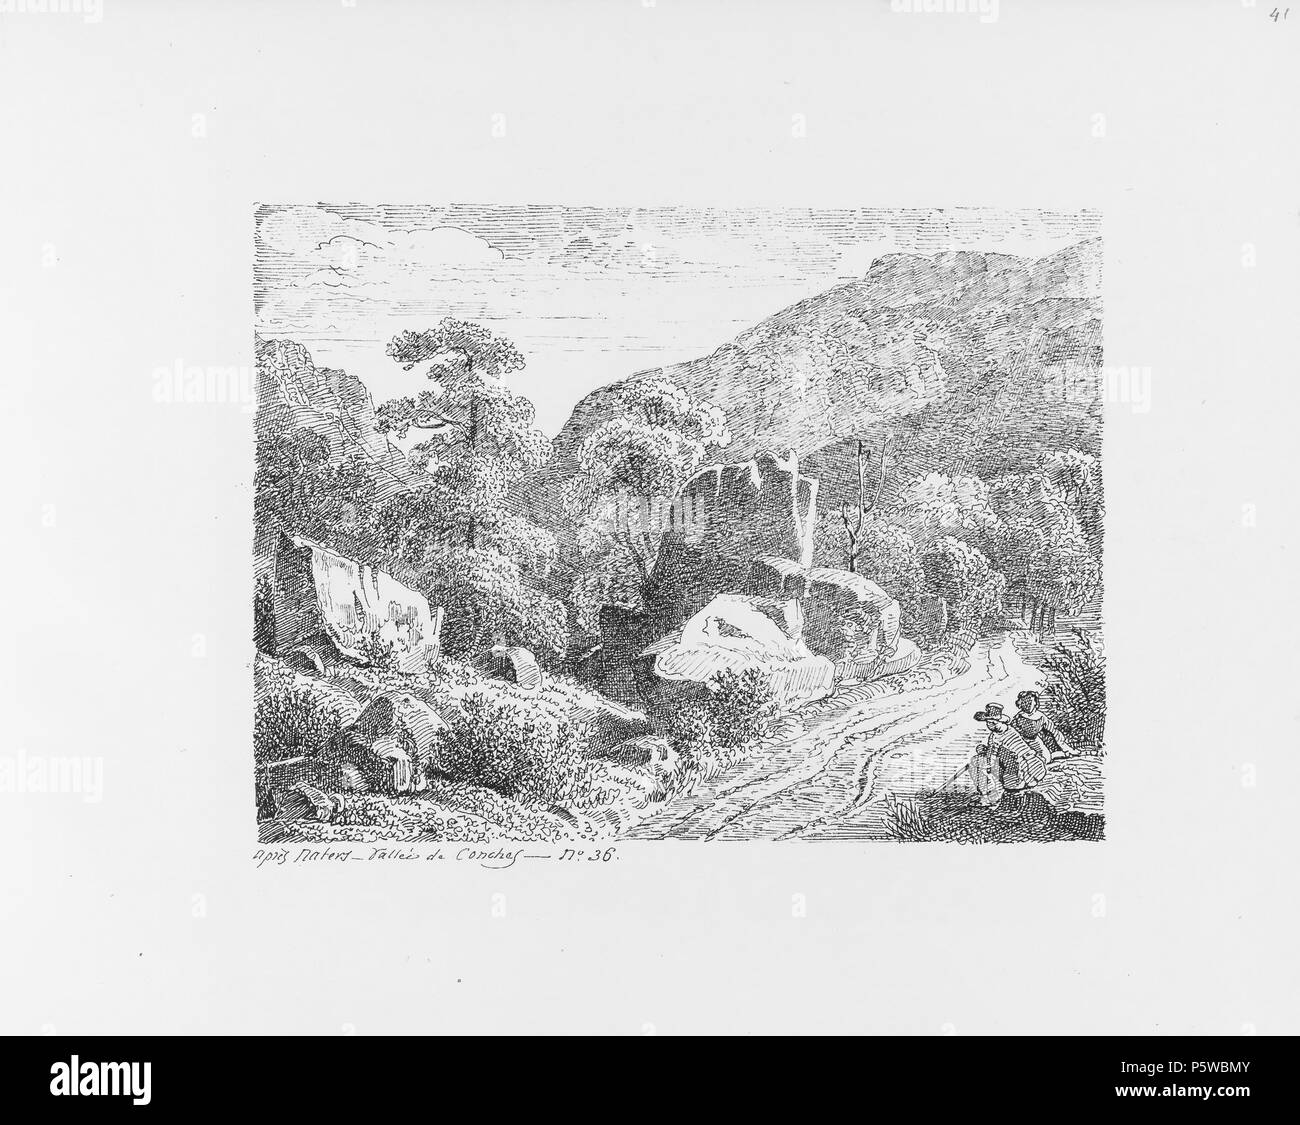 322 CH-NB-Voyage autour du Mont-Blanc dans les vallées d'Hérens de Zermatt et au Grimsel 1843-nbdig-19161-042 Stock Photo